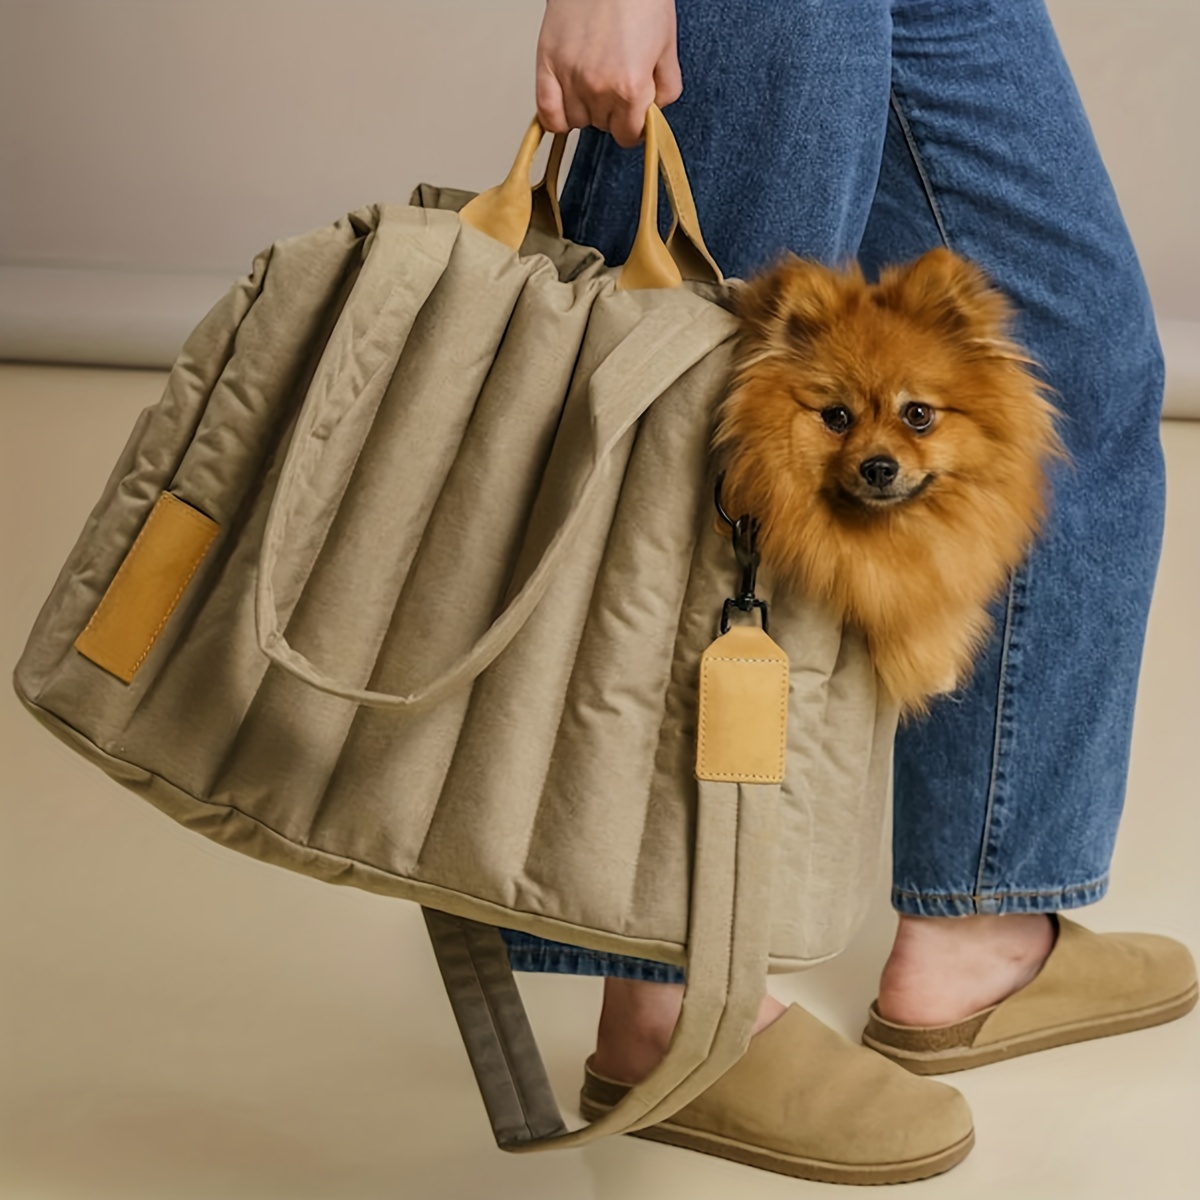  Slow Time Shop Large Transport Bag Fashion Dog Carrier PU  Leather Dog Handbag Dog Purse Cat Tote Bag Pet Cat Dog Hiking Bag Travel Bag  : Pet Supplies